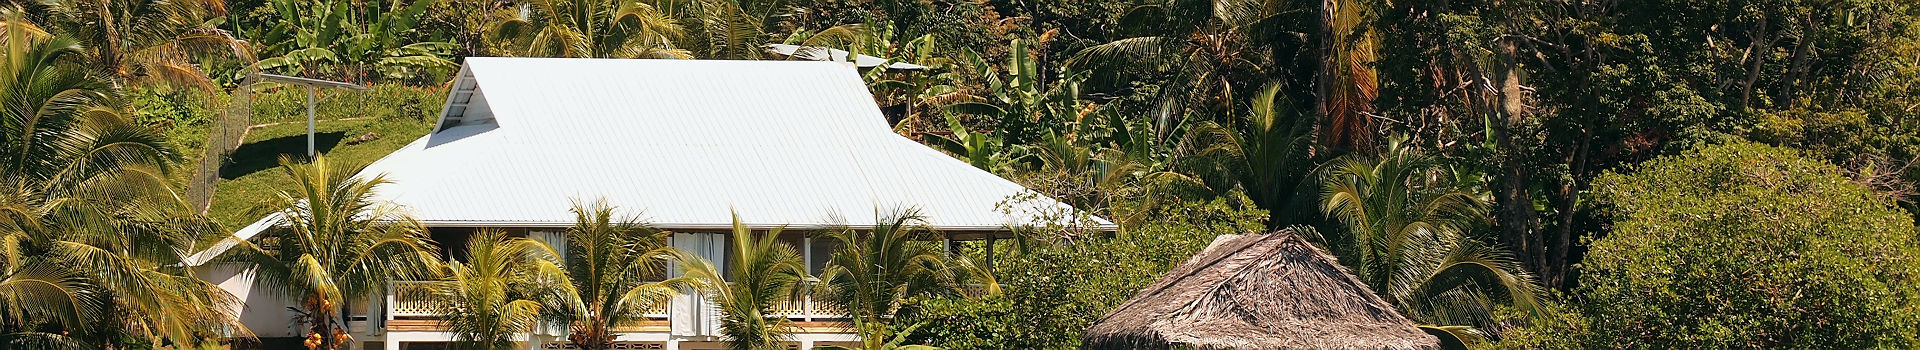 Maison tropicale sur le plage avec des cocotiers au Panama